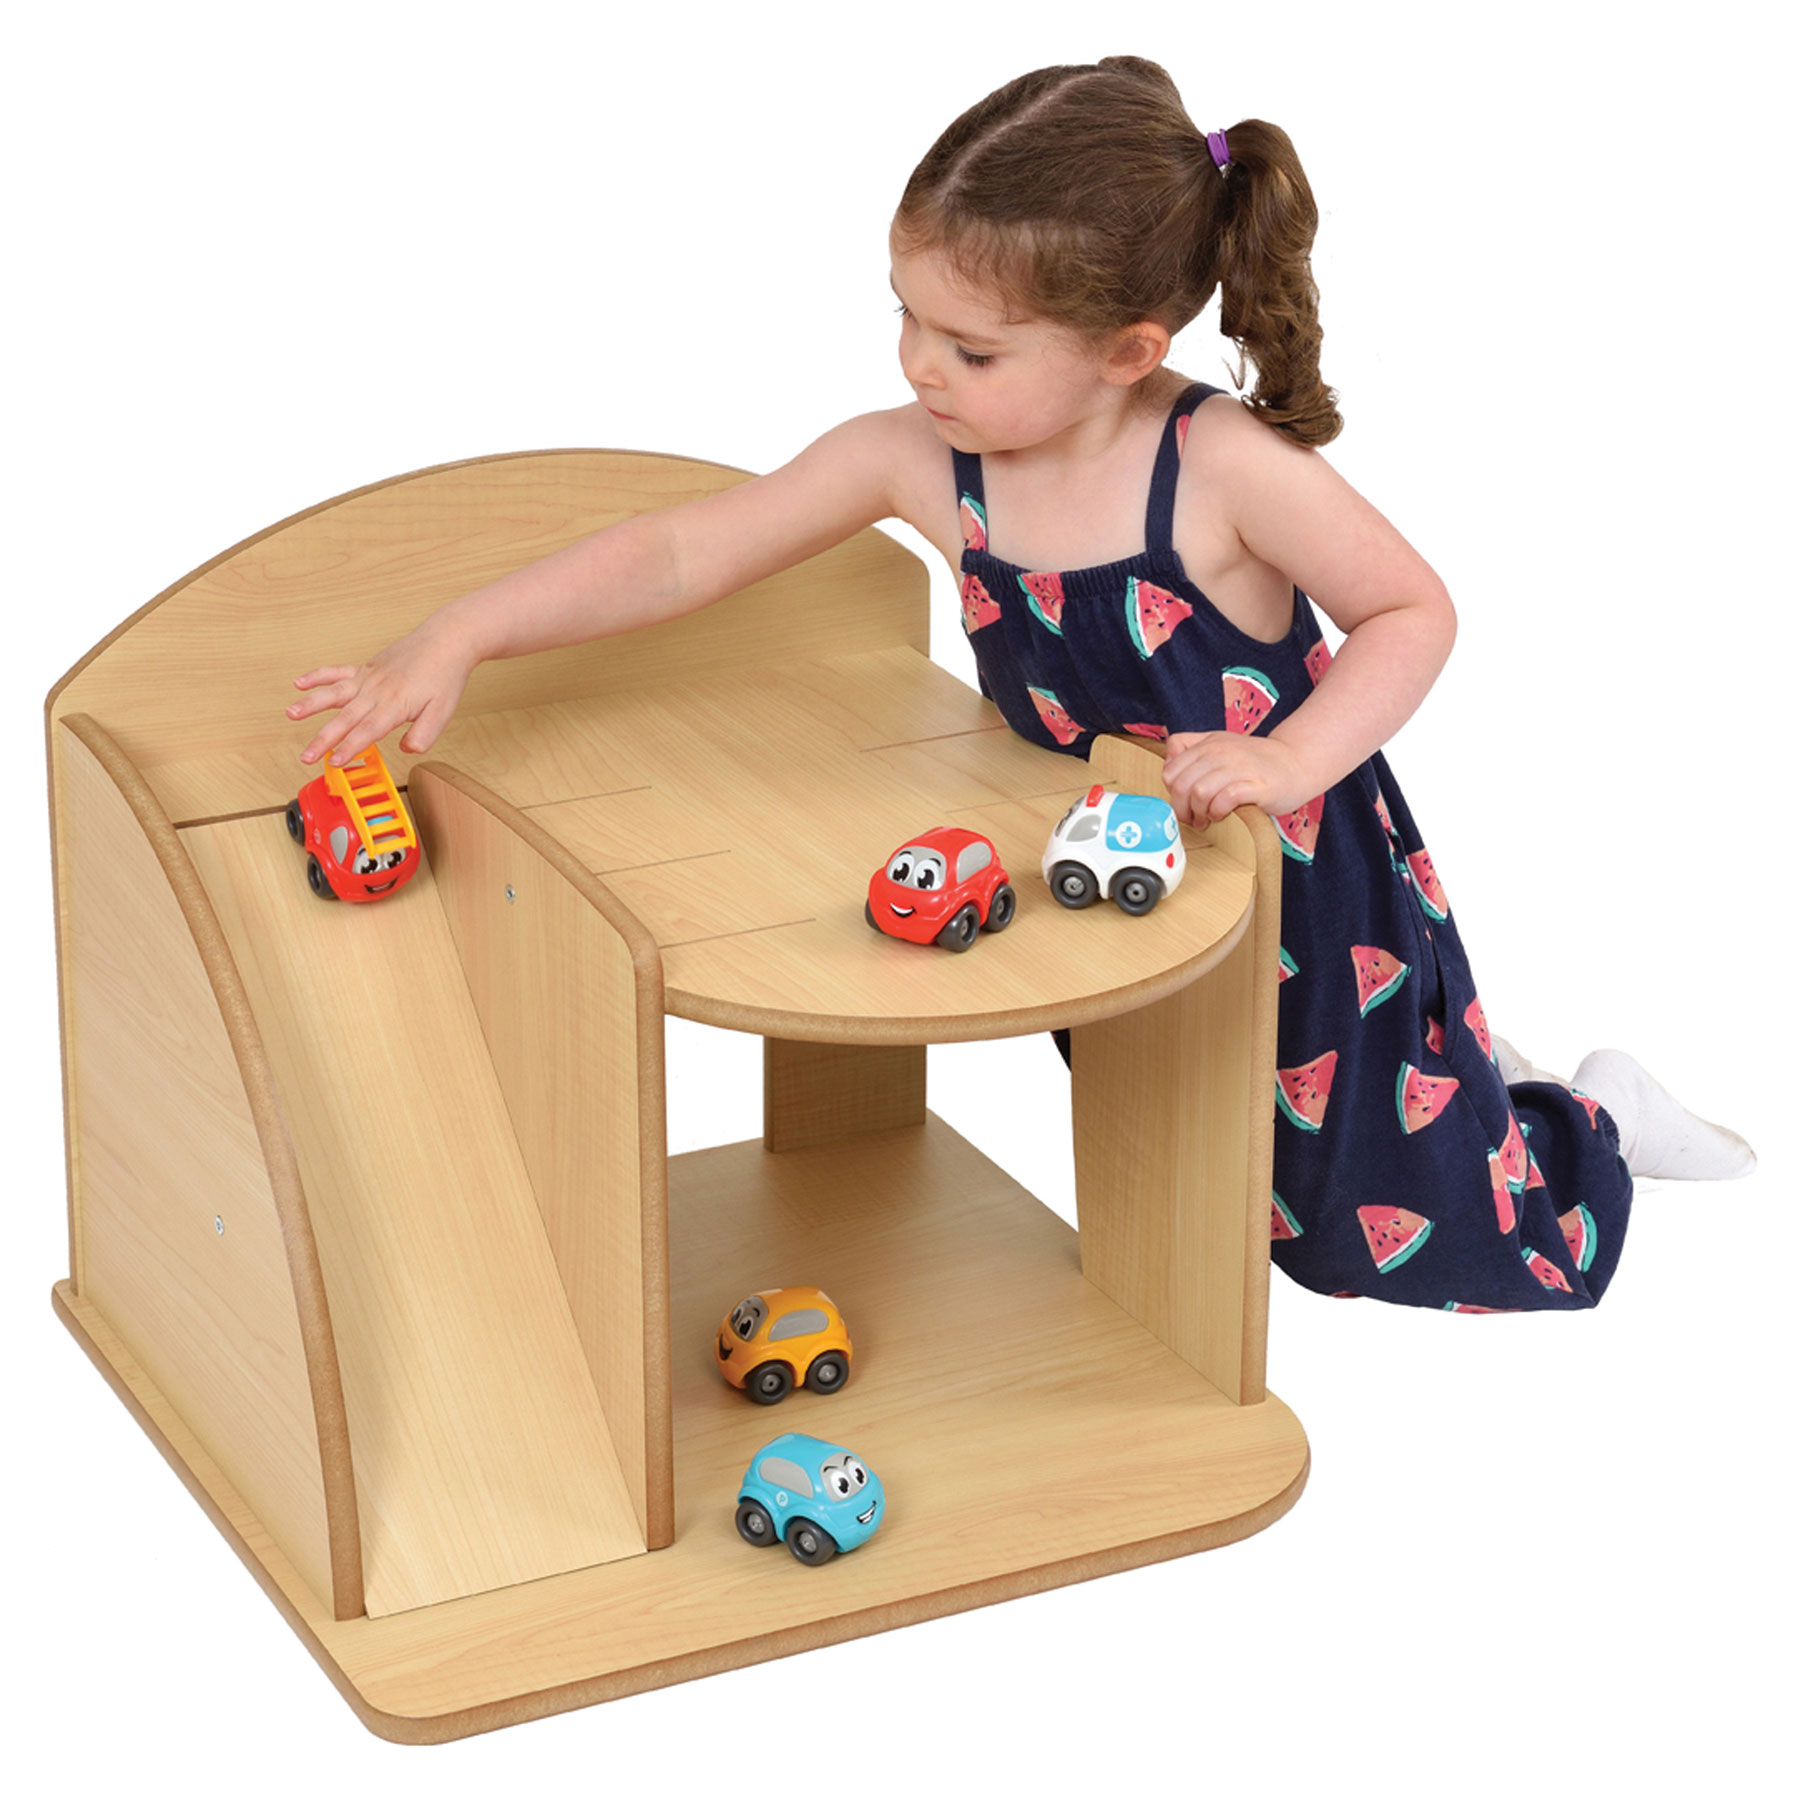 Children's Simple Wooden Toy Garage